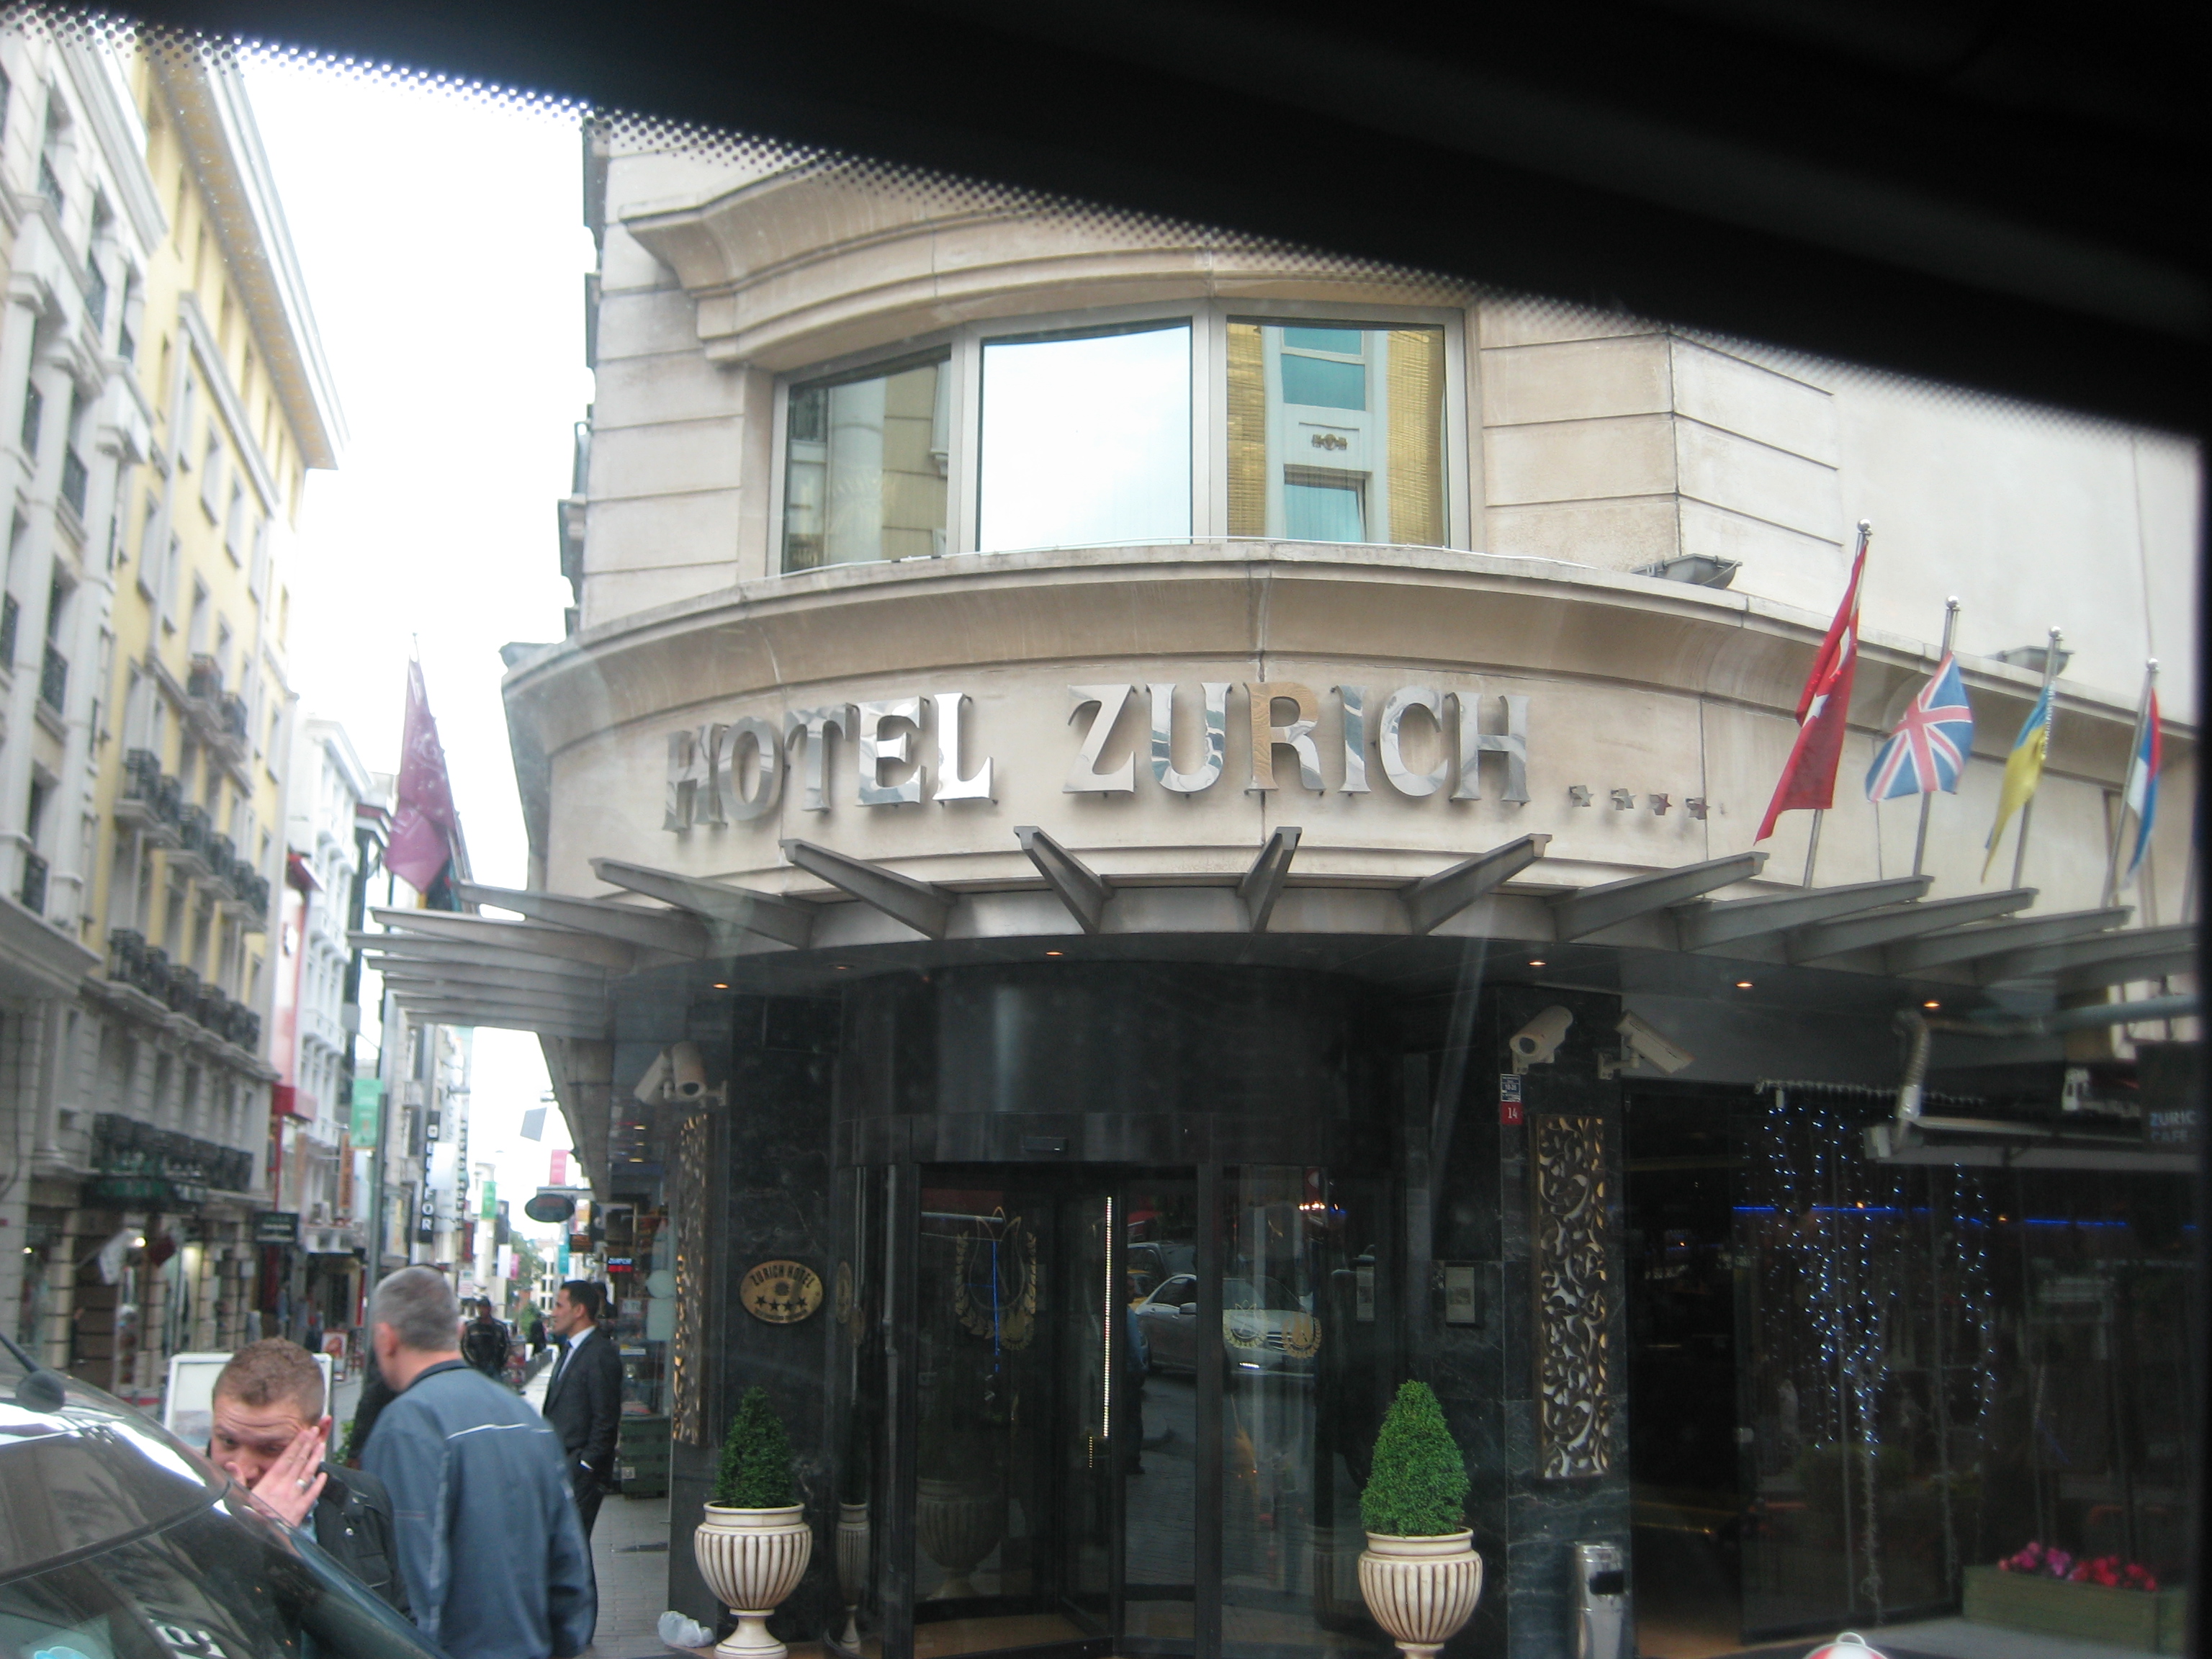  Zurich Hotel